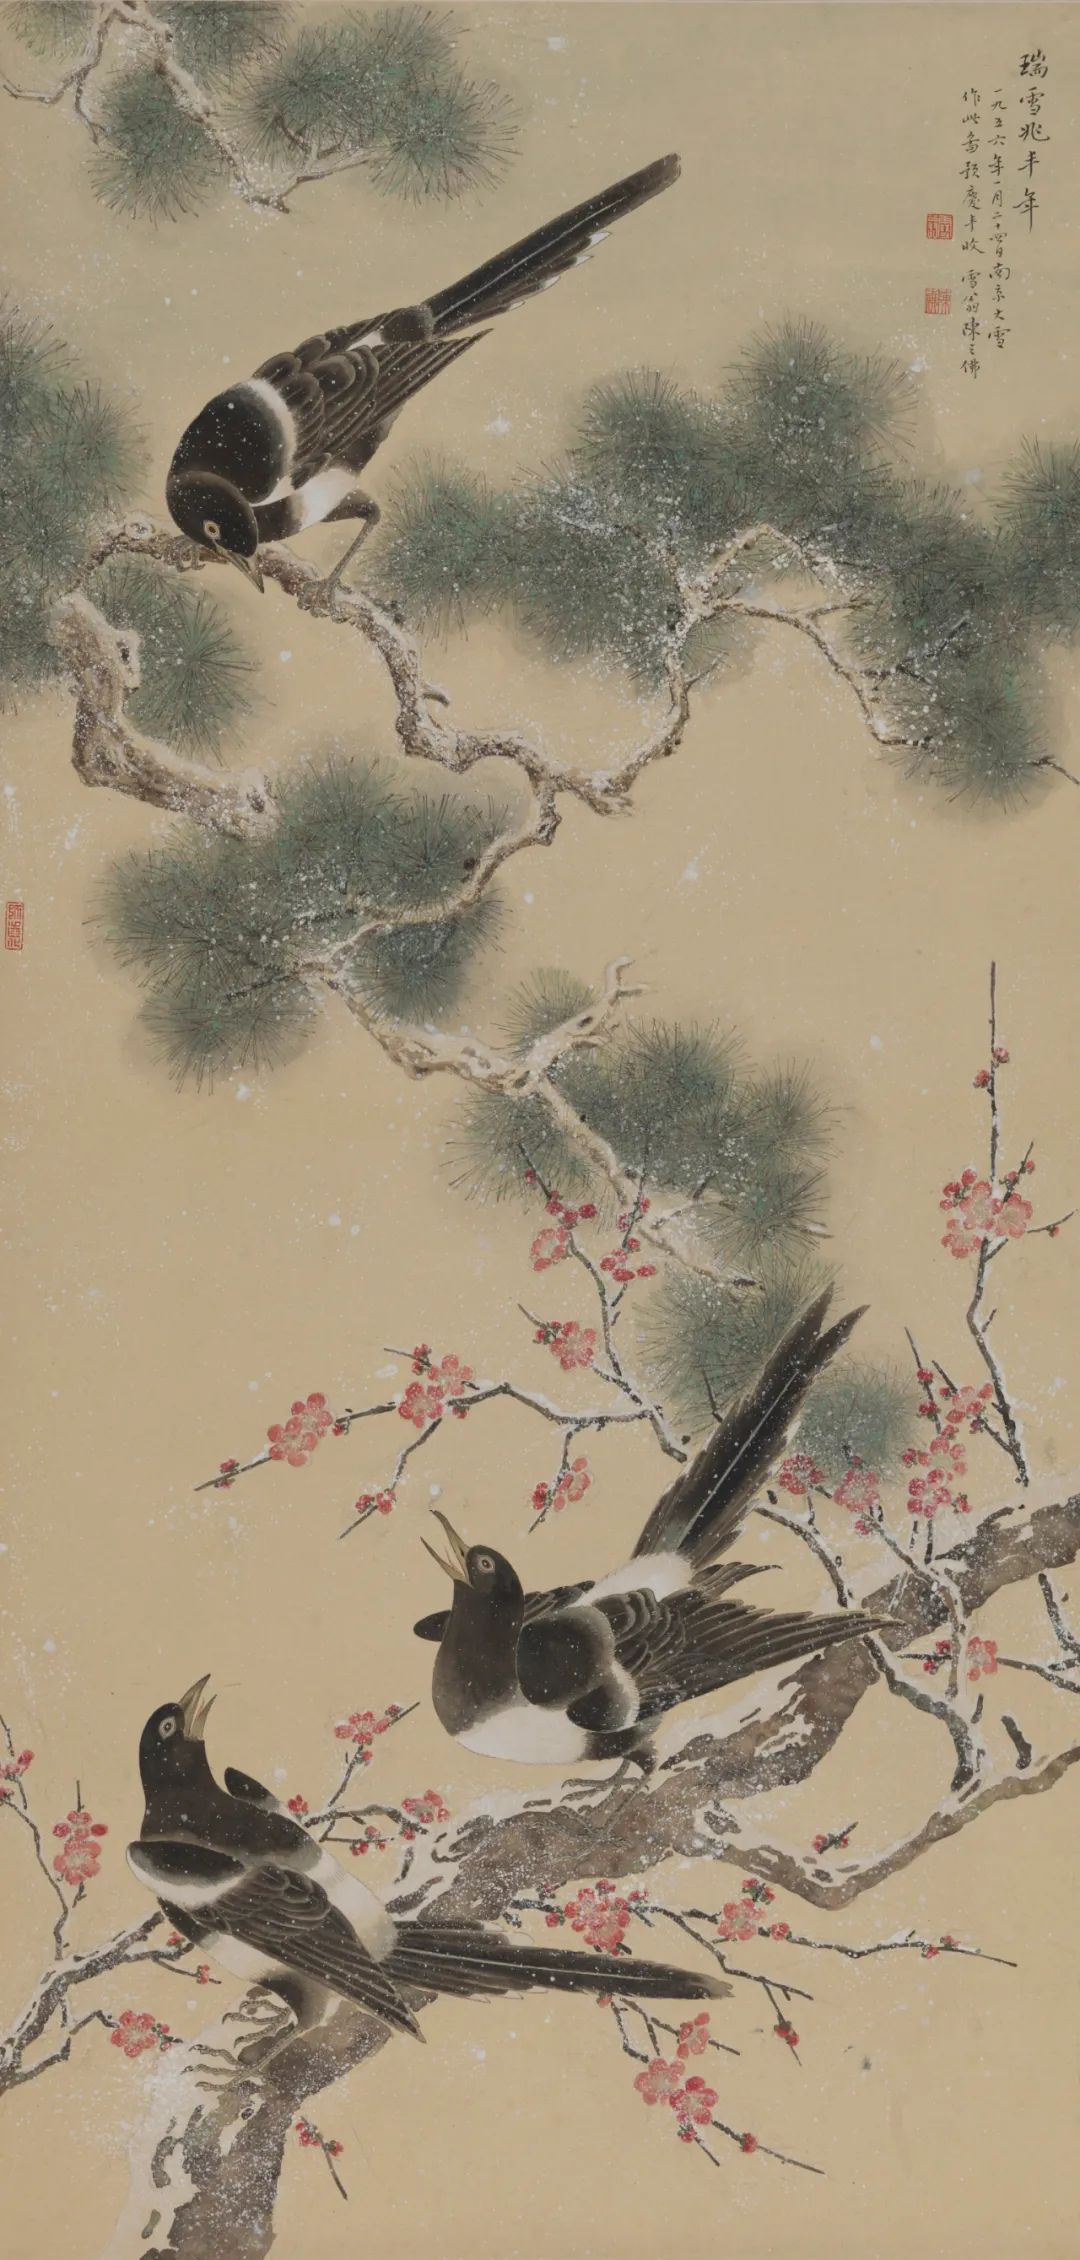 《瑞雪兆丰年》 陈之佛 中国画 114.2×55.4cm 1956年 中国美术馆藏